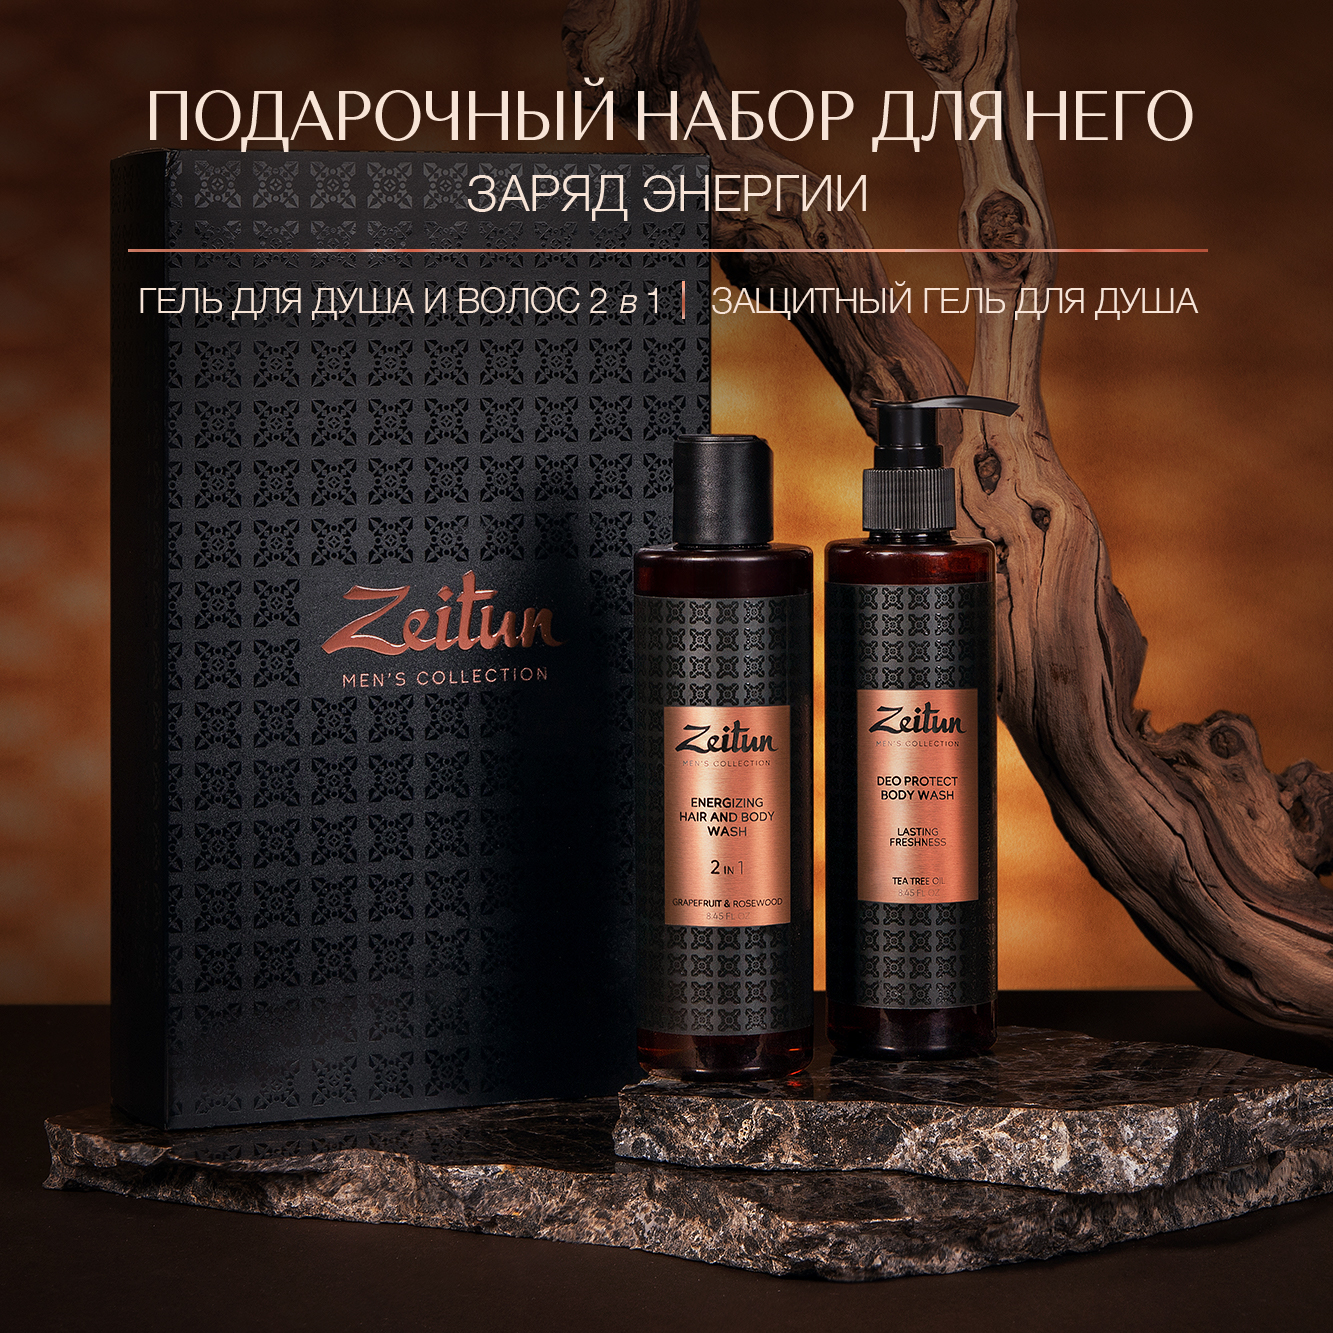 Подарочный набор для мужчин Zeitun косметический бьюти бокс для волос и тела где папа